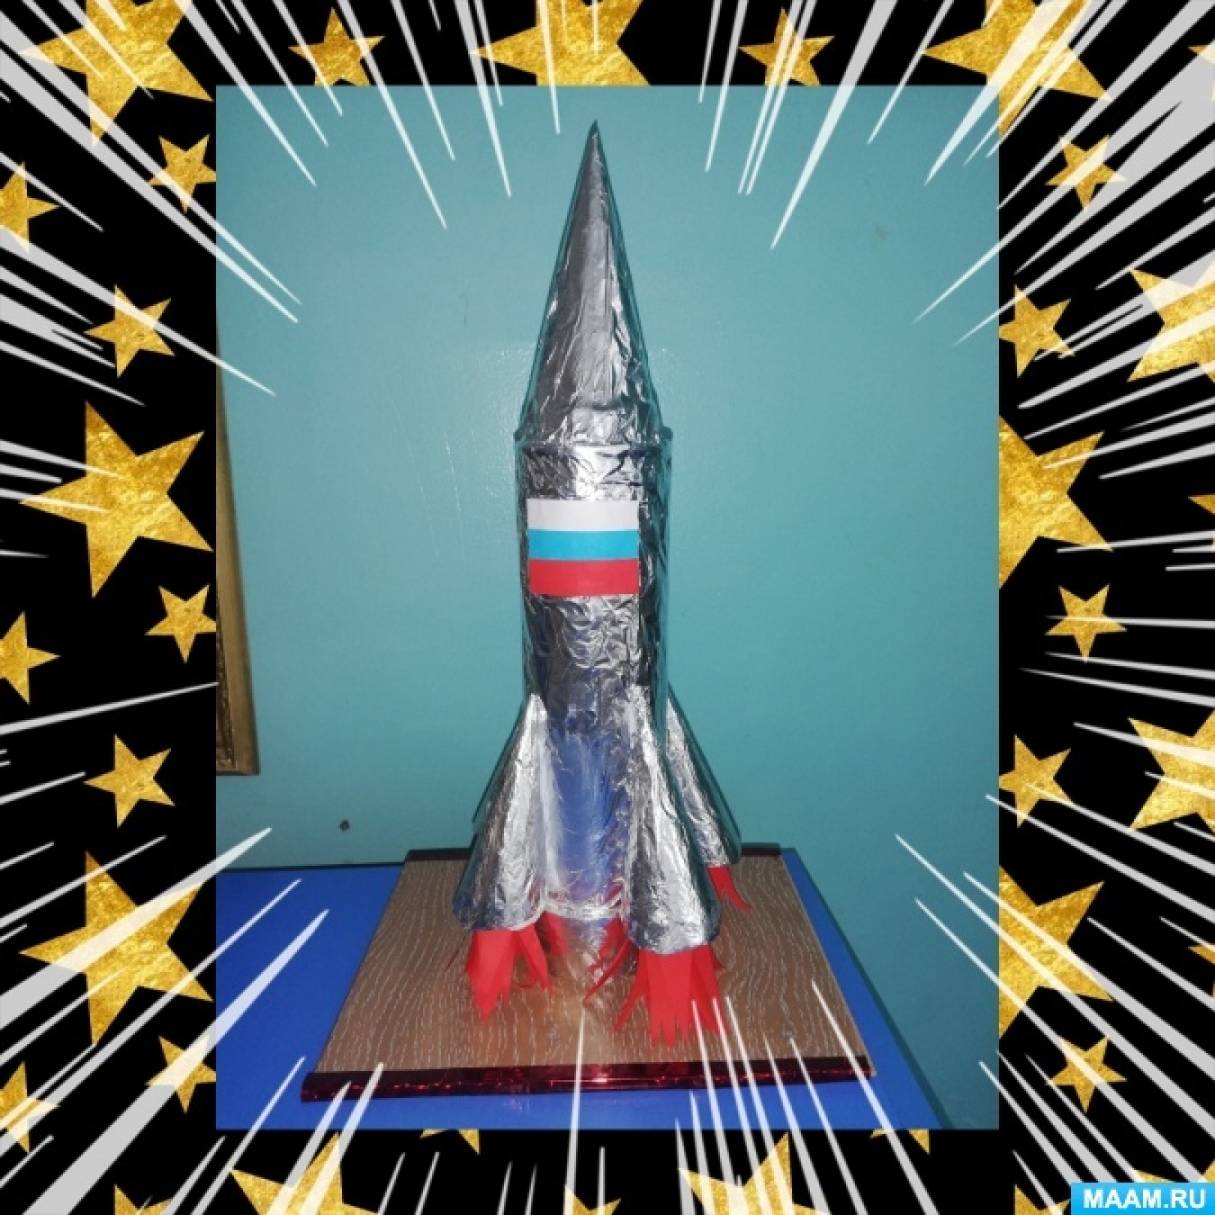 Поделка ракета: пошаговая инструкция как изготовить своими руками оригинальную ракету (100 фото)